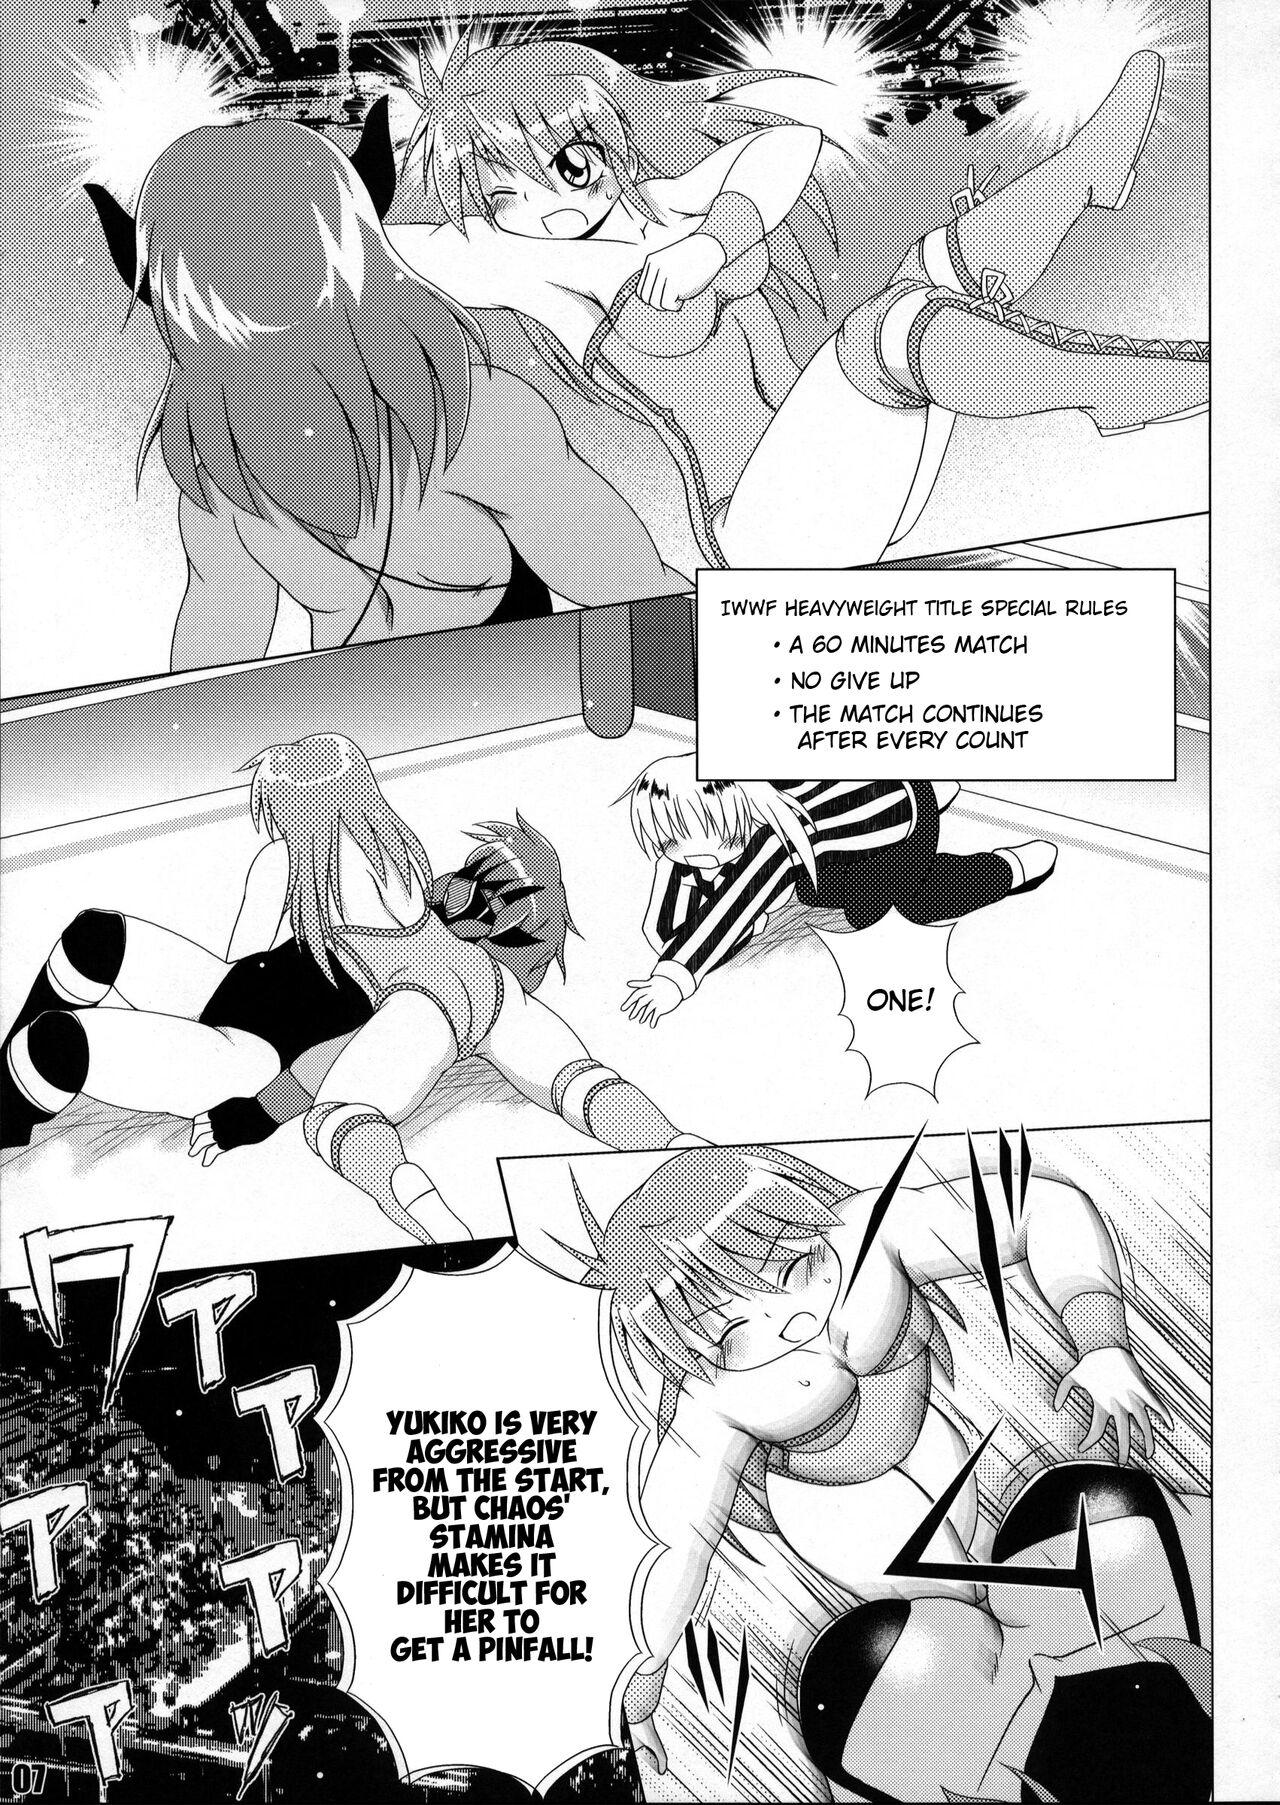 Fucked Hard (COMIC1☆6) [Soket=Pocket (Soket)] Mighty Yukiko vs Dark Star Chaos (FALLIN' ANGELS4 (WRESTLE ANGELS)) - Wrestle angels Culo Grande - Page 3